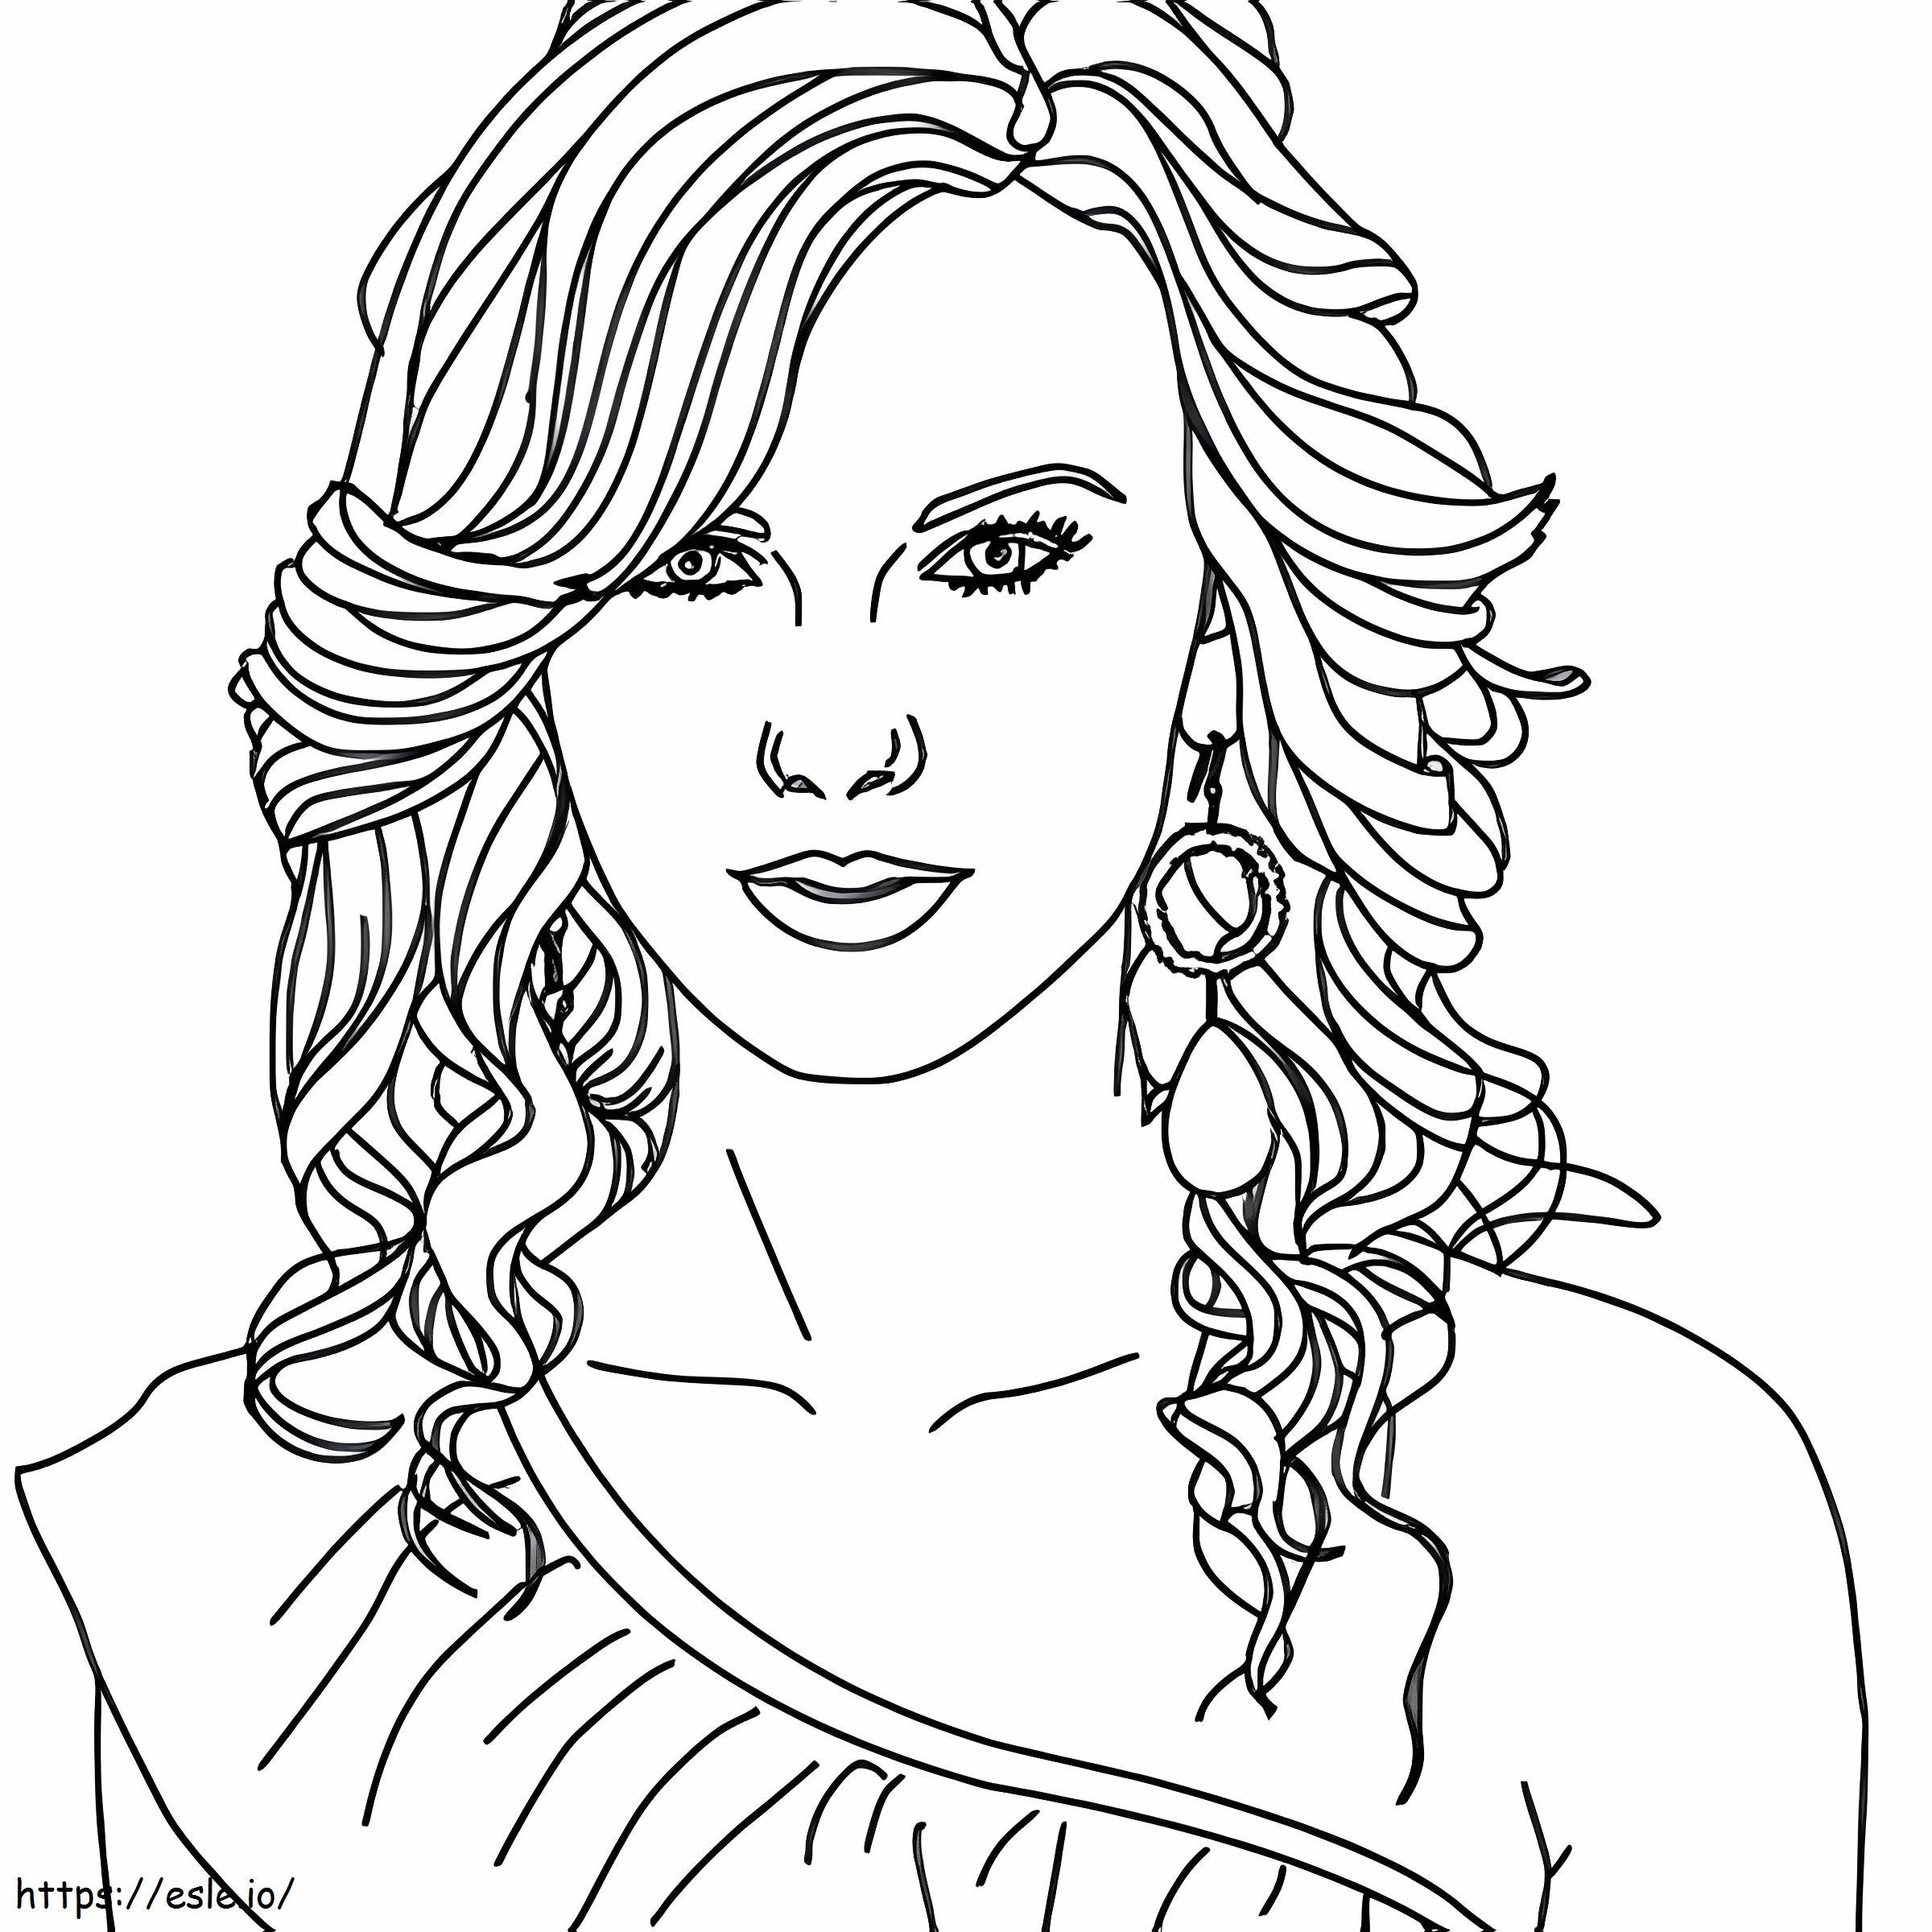 1541143686 Immagini di Taylor Swift da colorare Taylor Swift Scarica Jokingart Taylor Swift Pagine di attività Disney Junior 600X600 1 da colorare